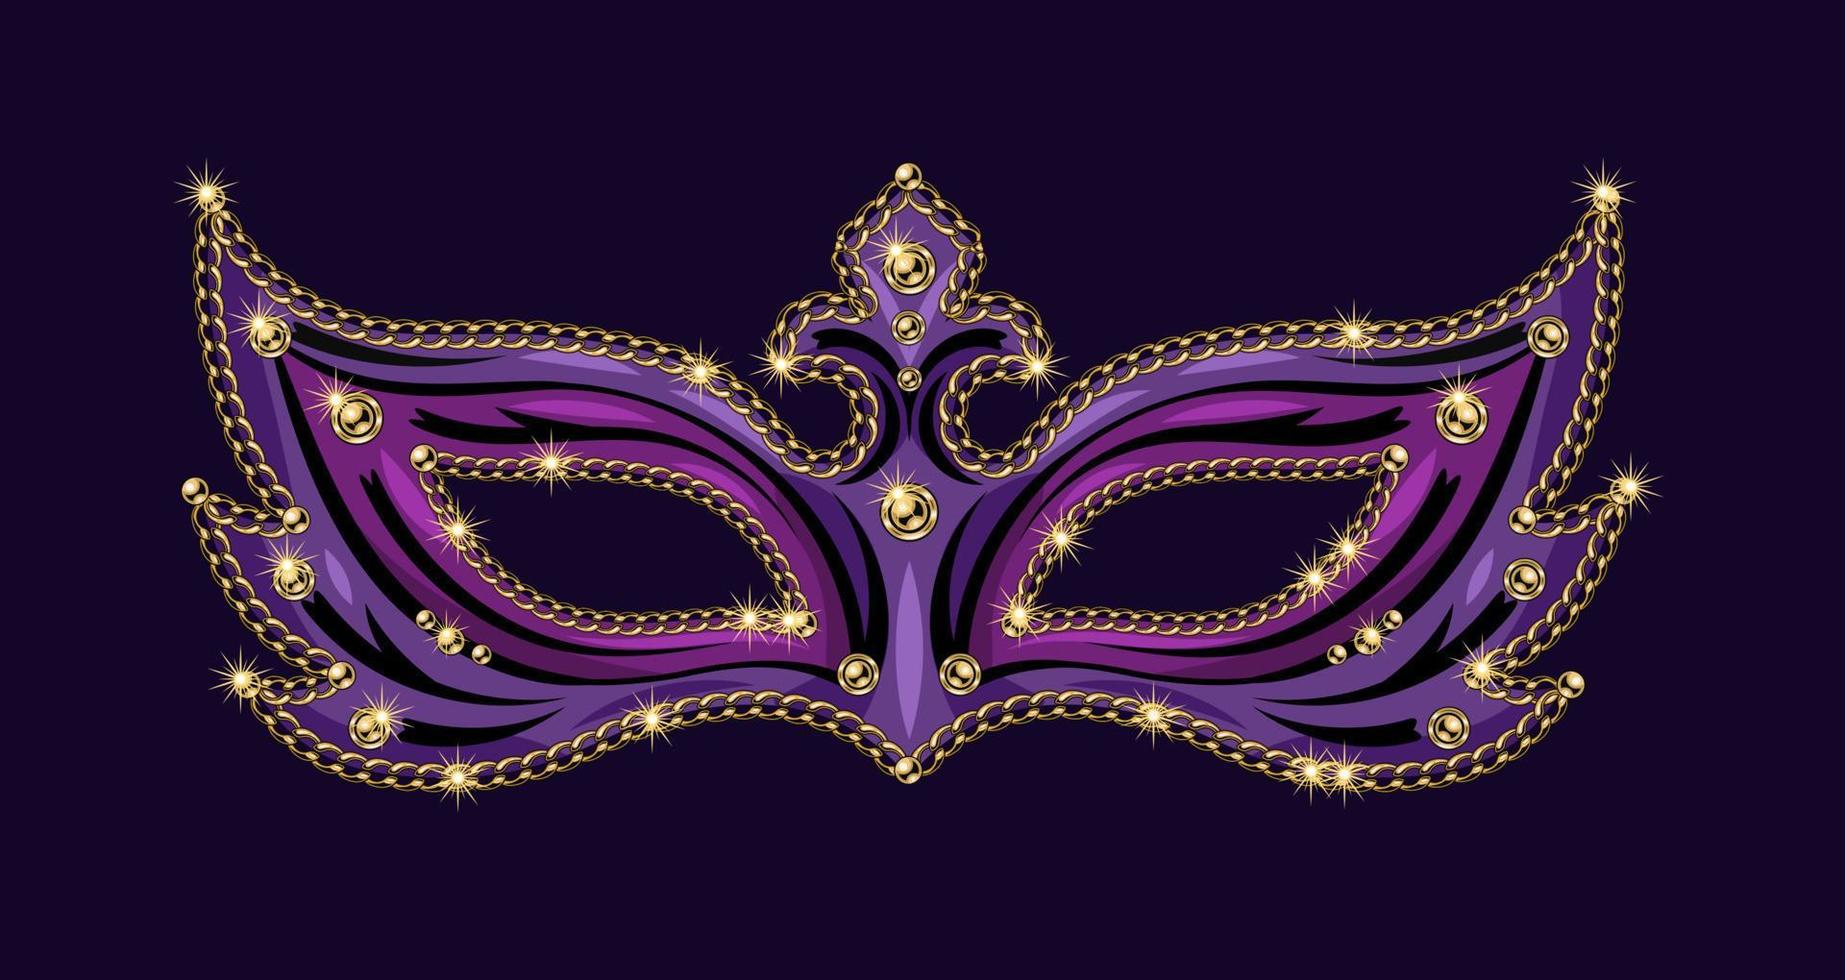 máscara púrpura de carnaval decorada con cuentas, cadenas doradas. ilustración detallada en estilo vintage vector